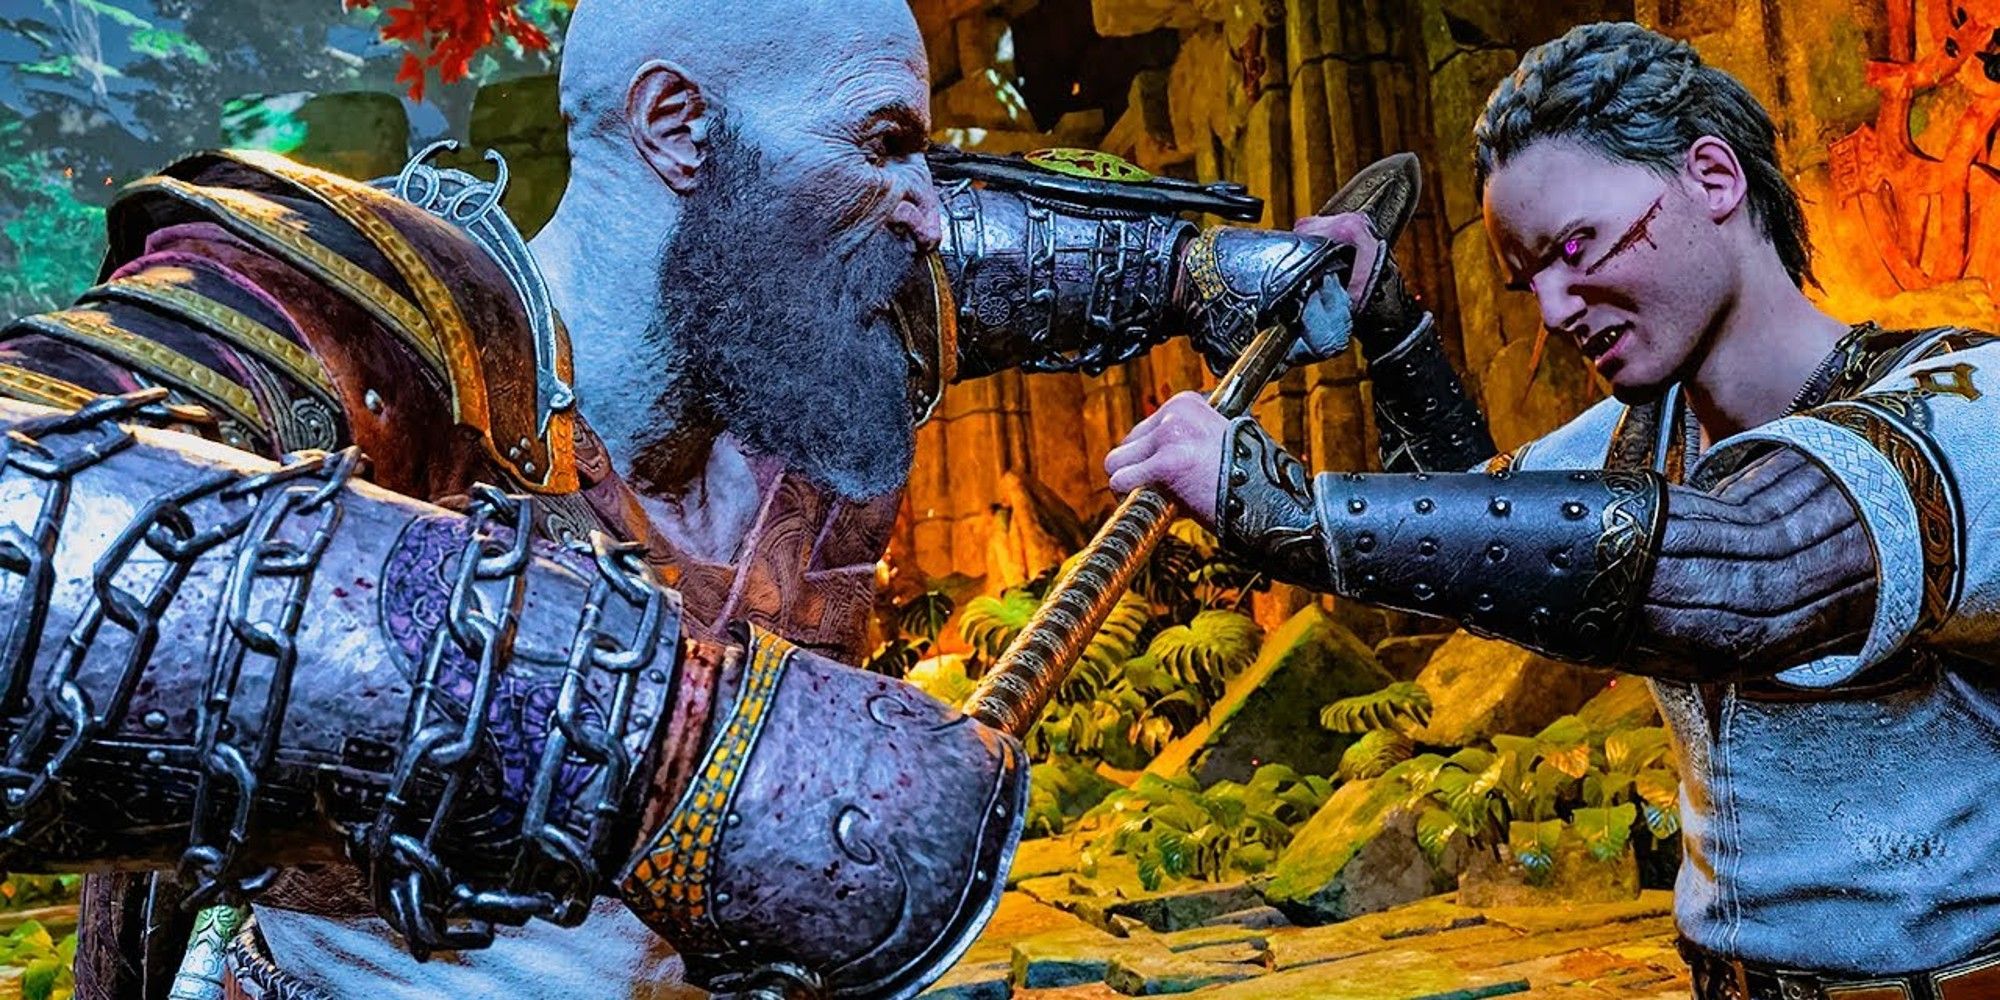 Kratos vs Heimdall God of War Ragnarok, Heimdall grabbing Kratos's axe